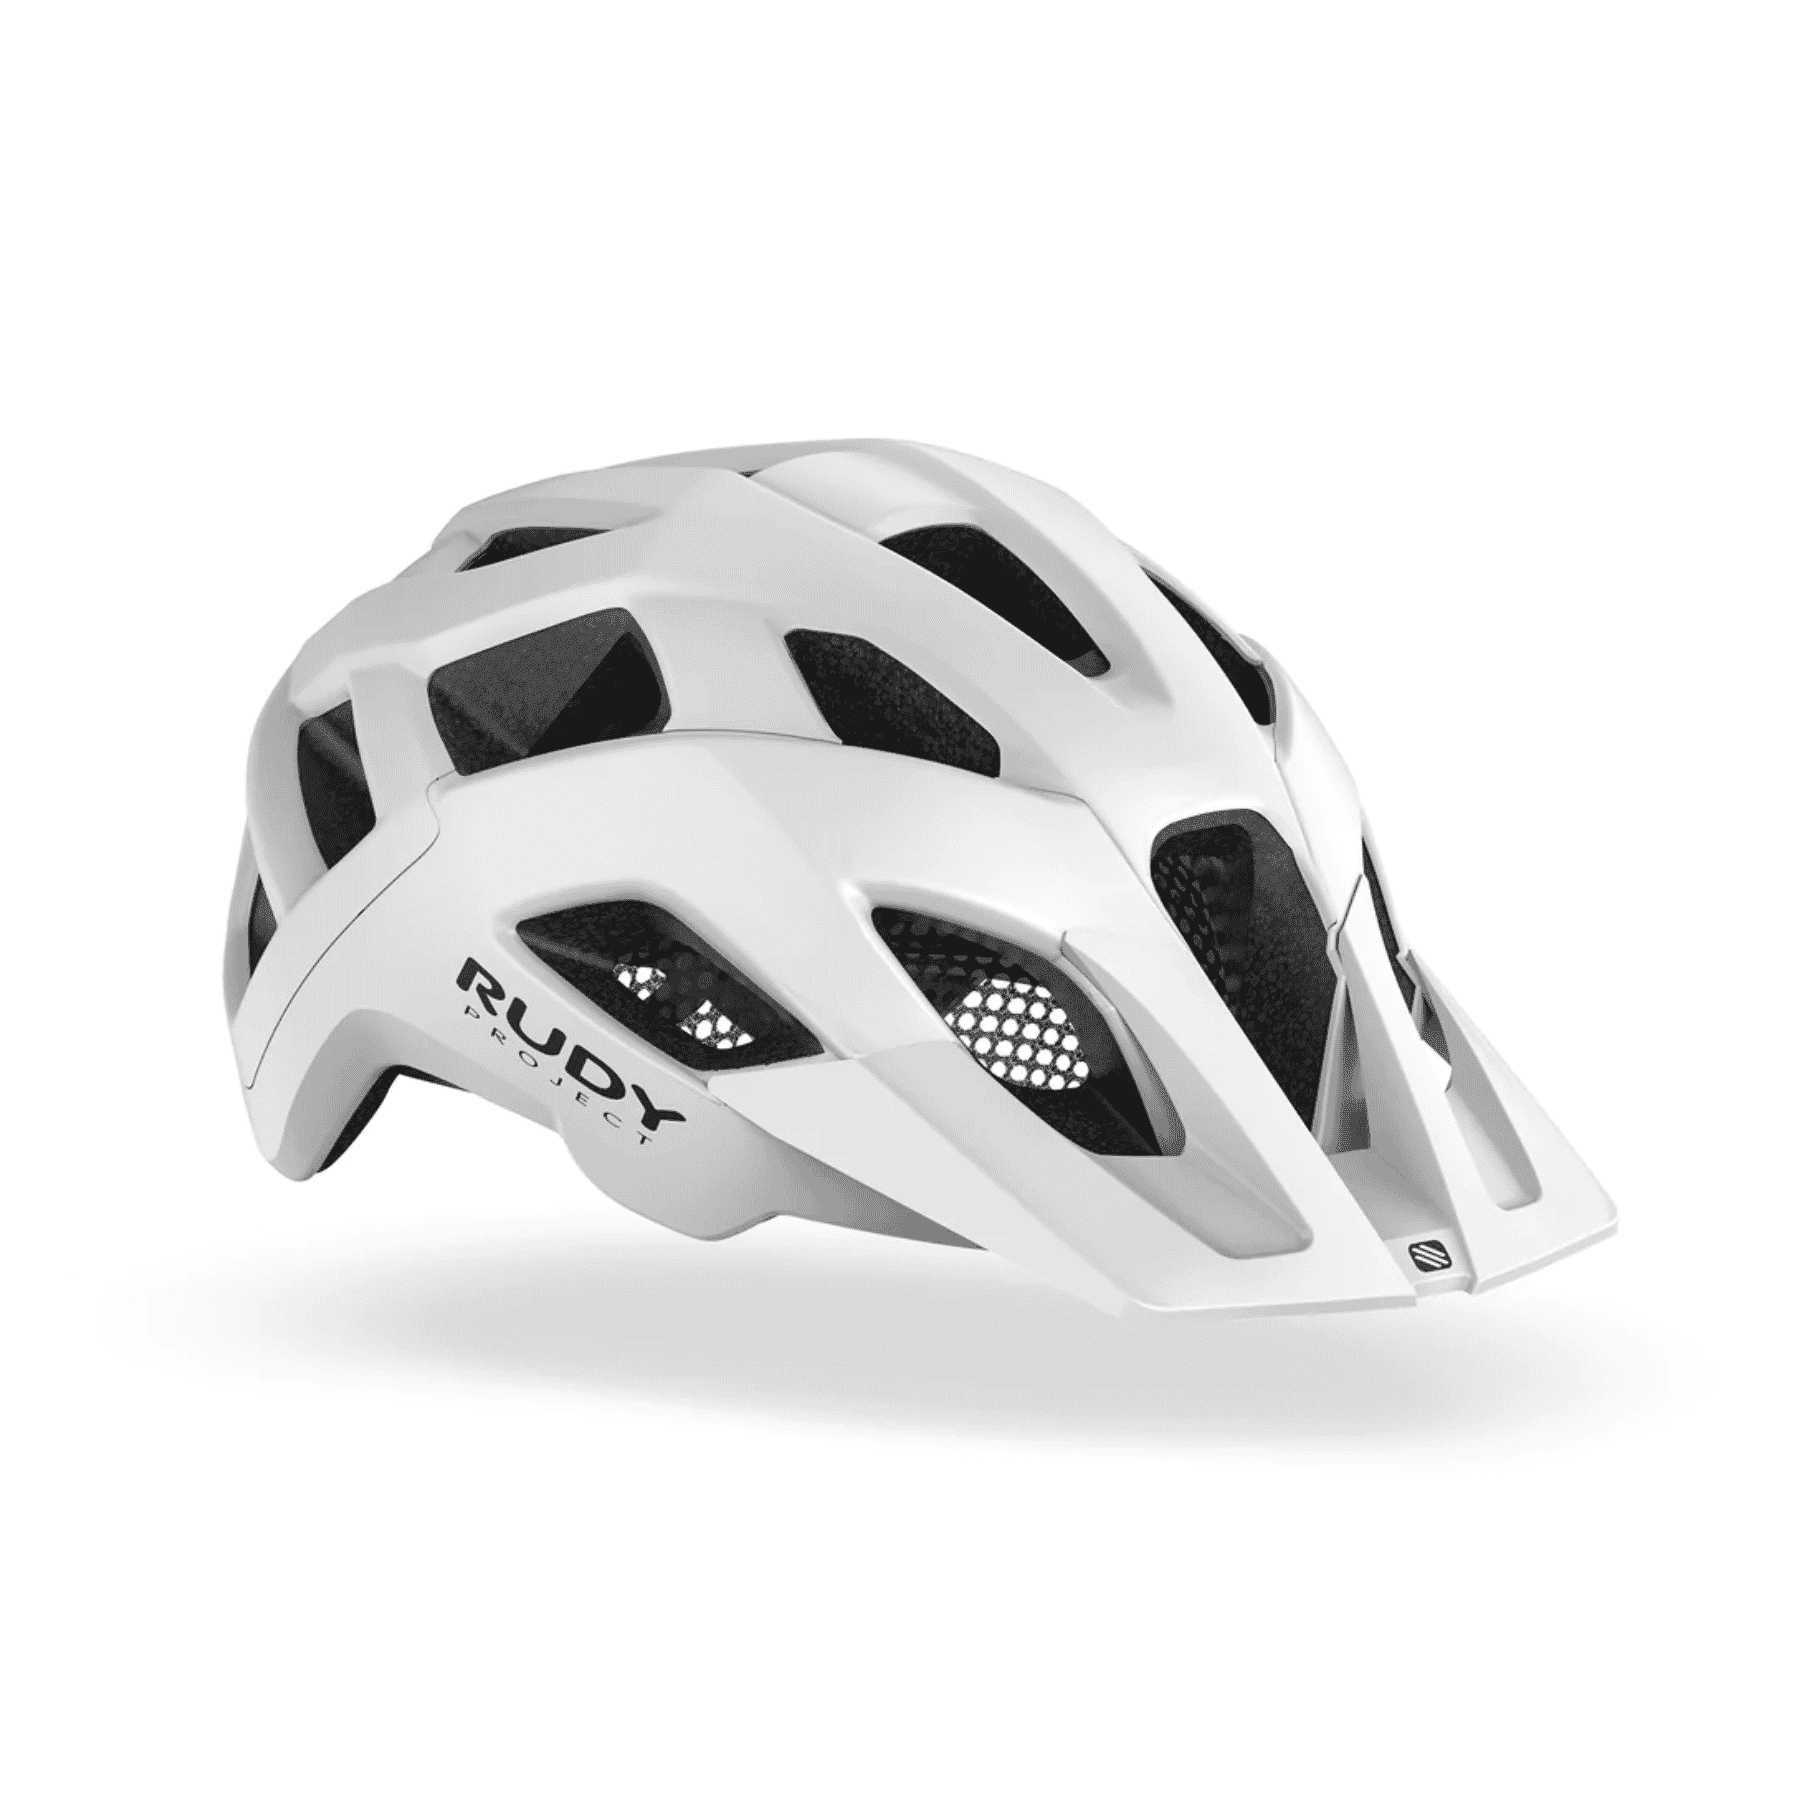 Crossway Helmet – Rudy Project